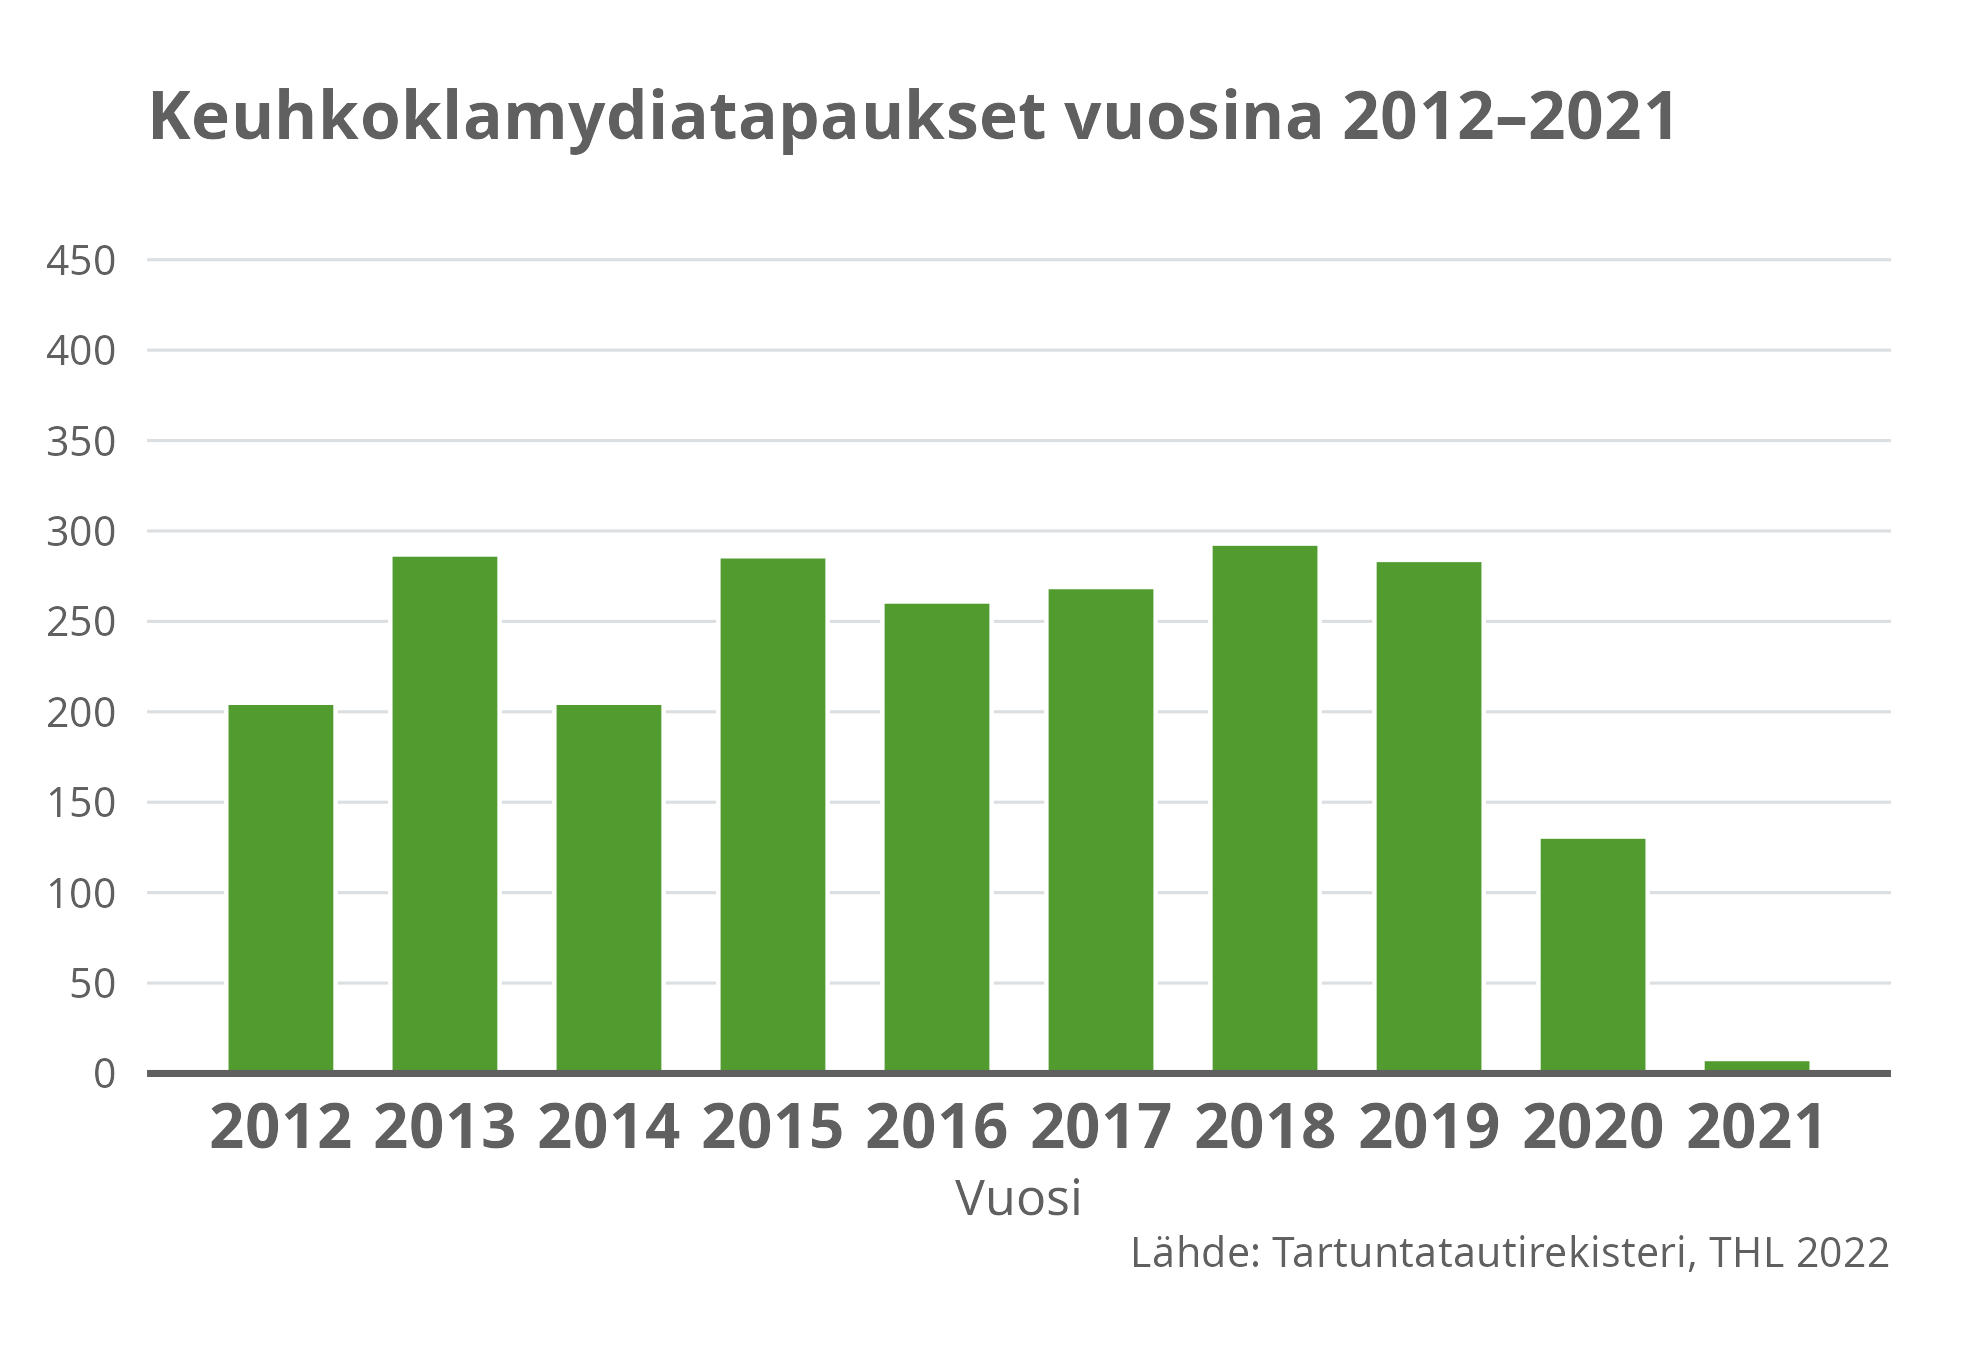 Keuhkoklamydia tapaukset vuosina 2012-2021.